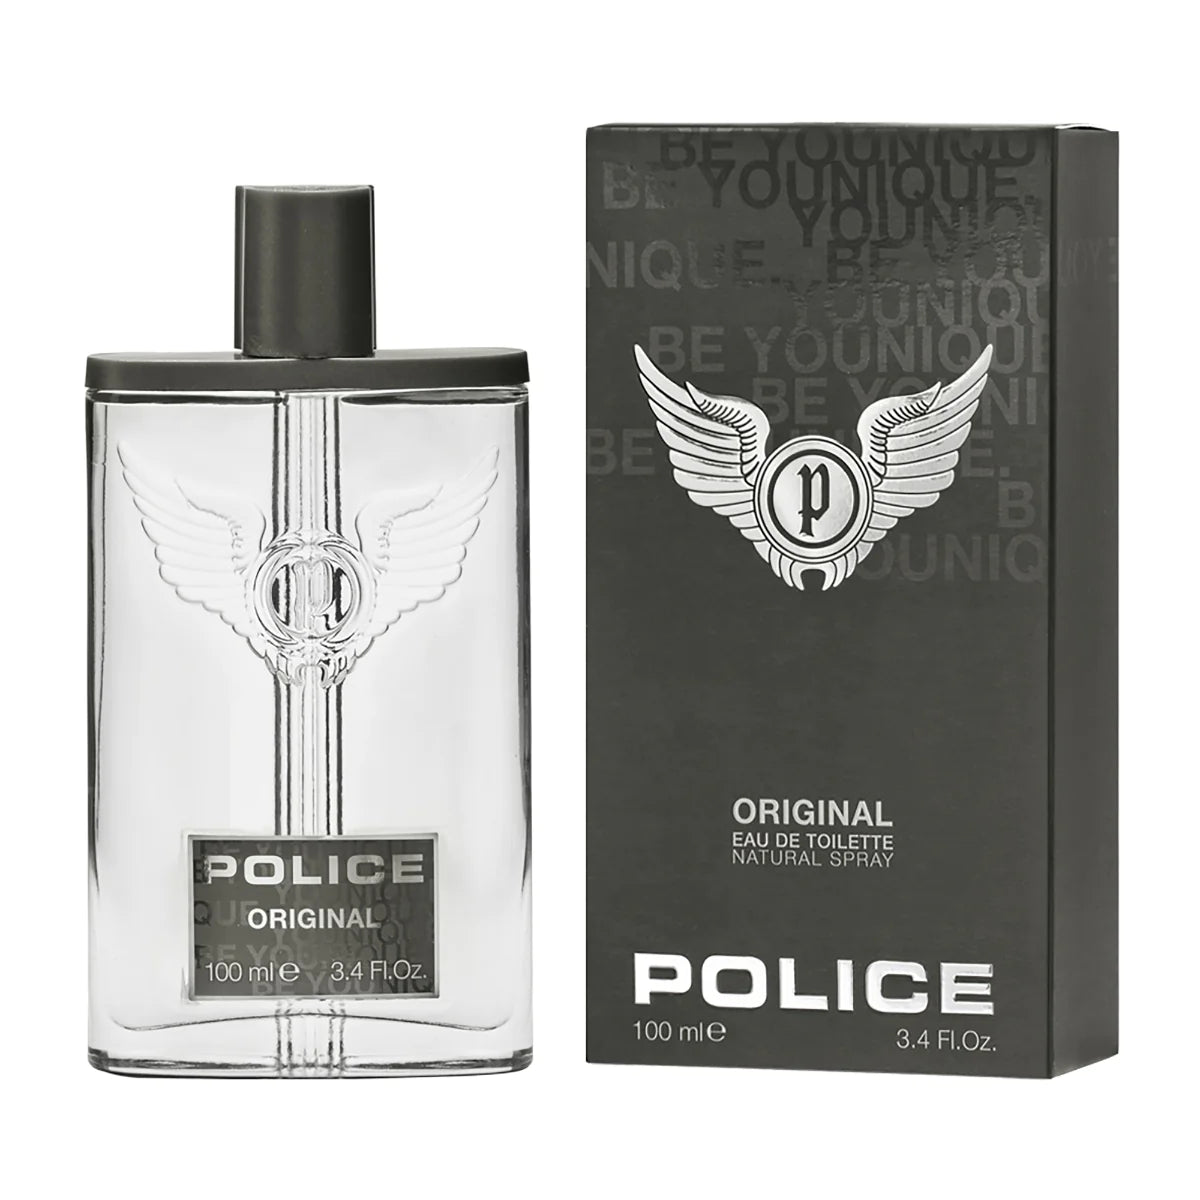 Police Original for Men - Eau de Toilette, 100 ml